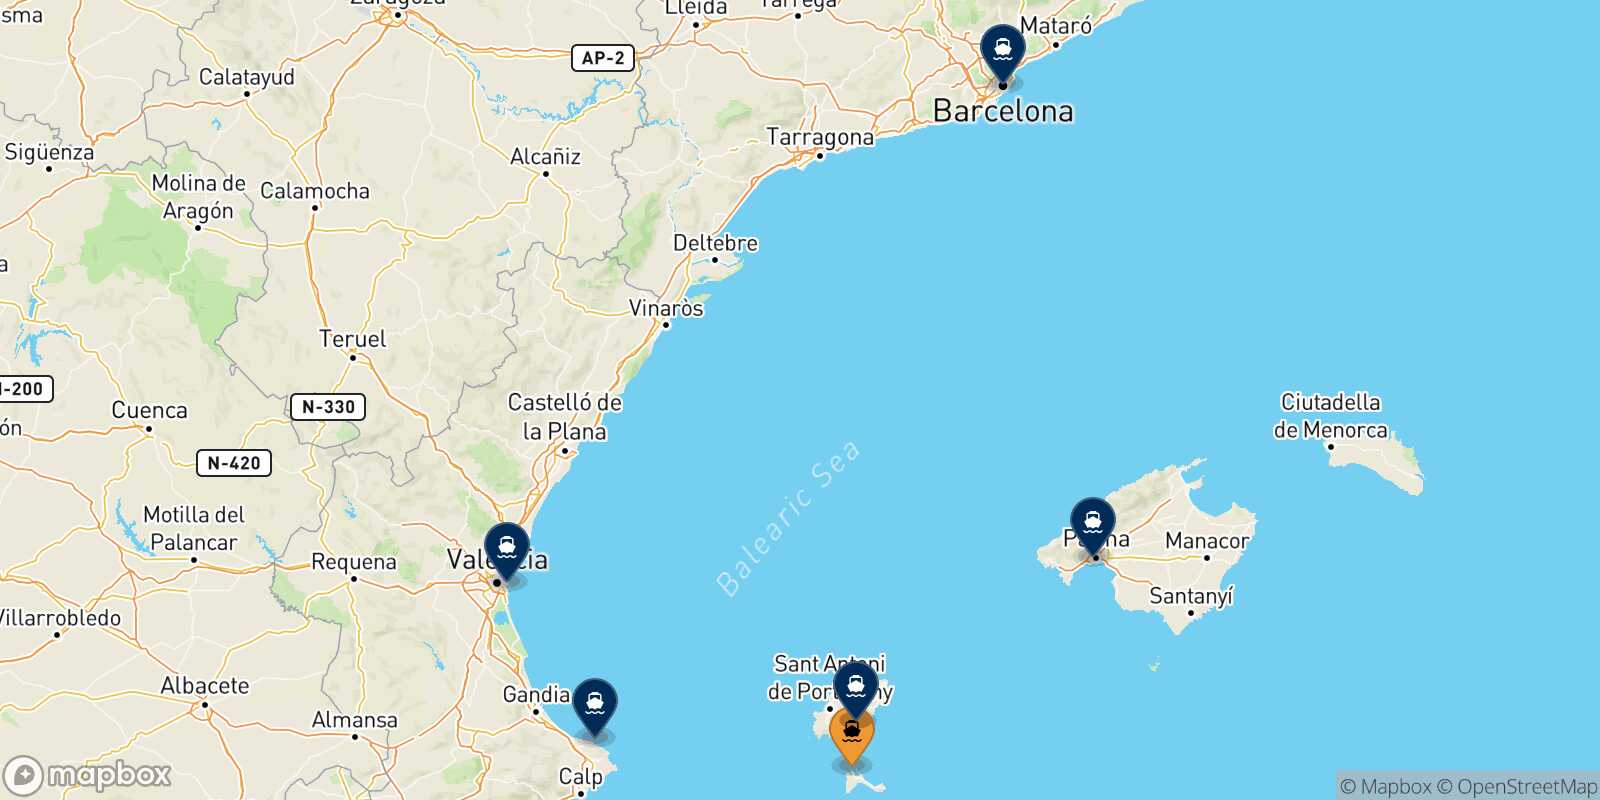 Mappa delle destinazioni raggiungibili da Formentera